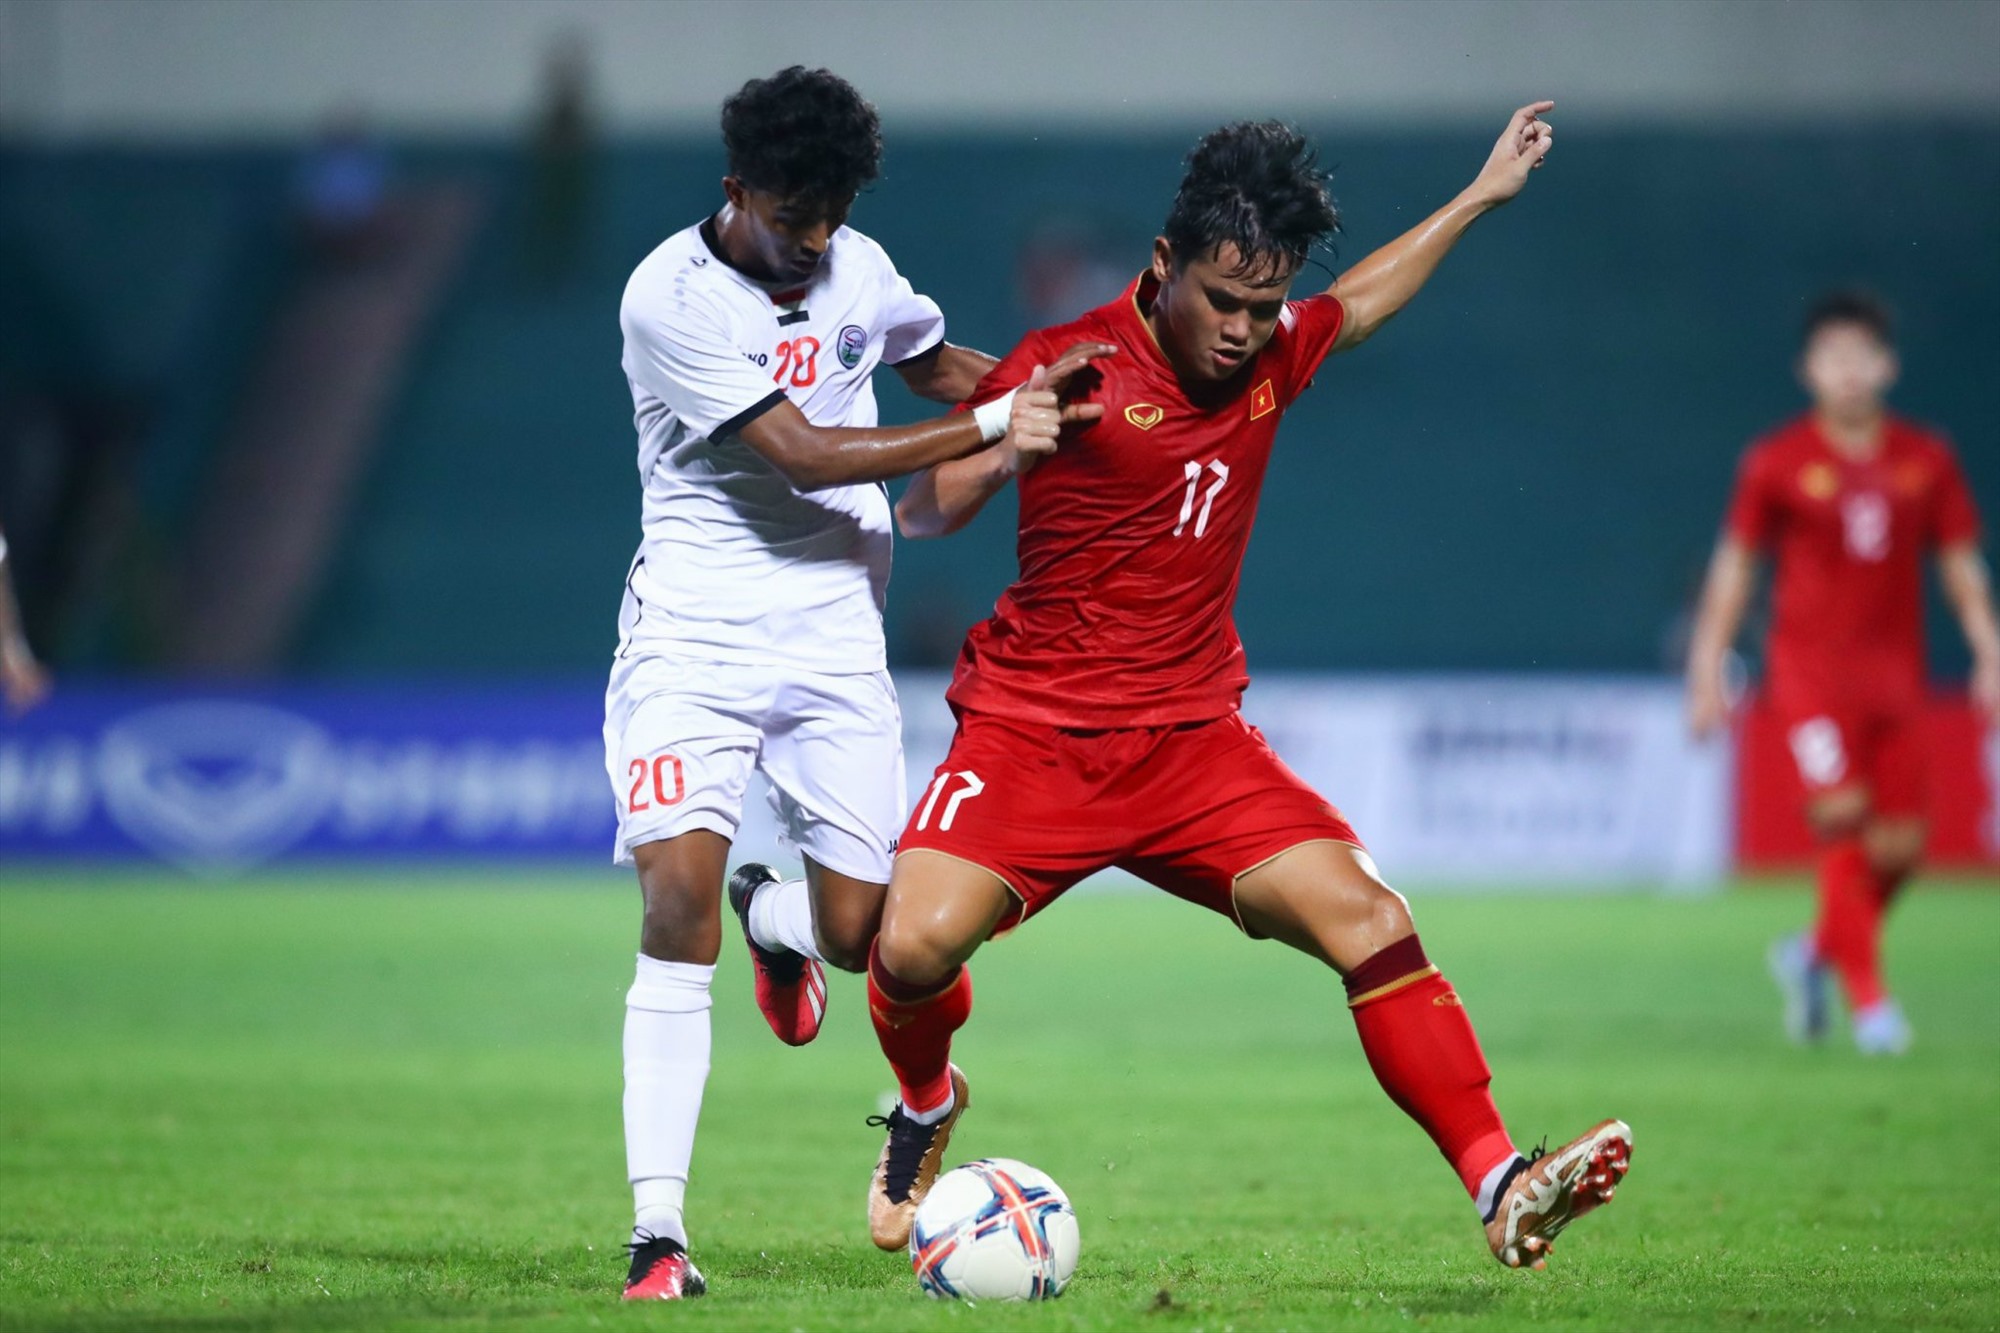  U23 Việt Nam thi đấu bế tắc trong hiệp 1 trước Yemen. Ảnh: Minh Dân